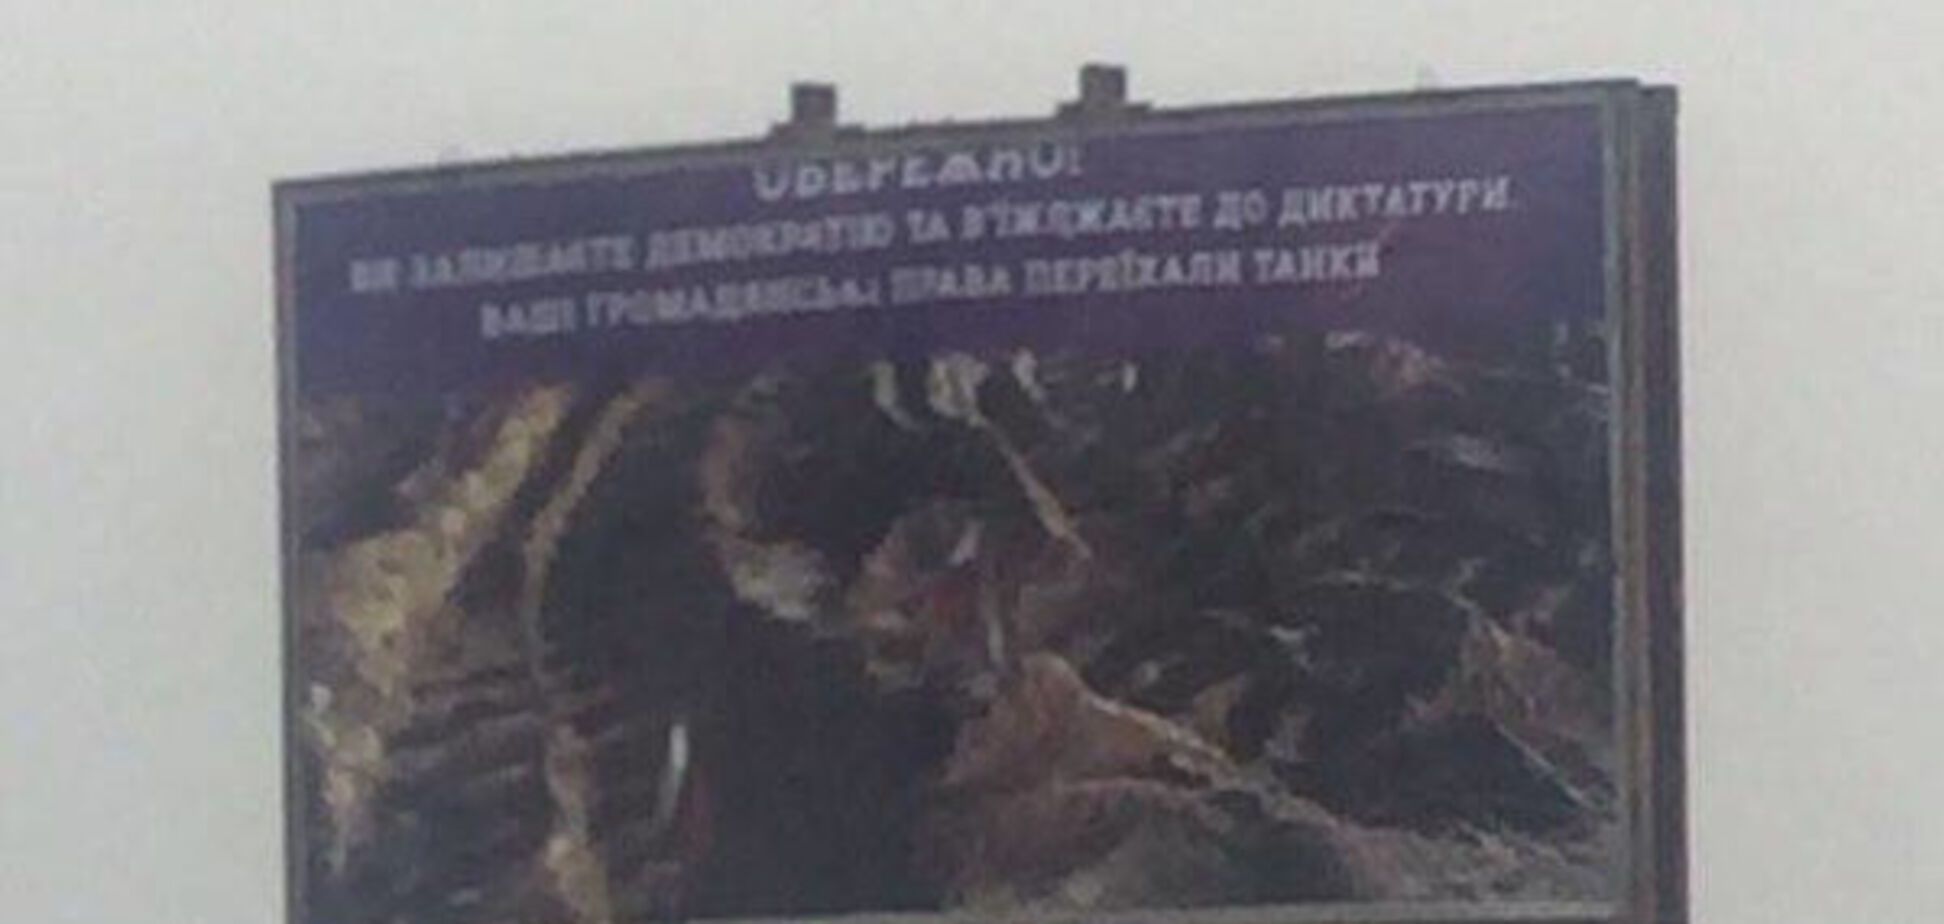 'Свободу переехали танки': волонтеры передали 'привет' оккупантам под Крымом